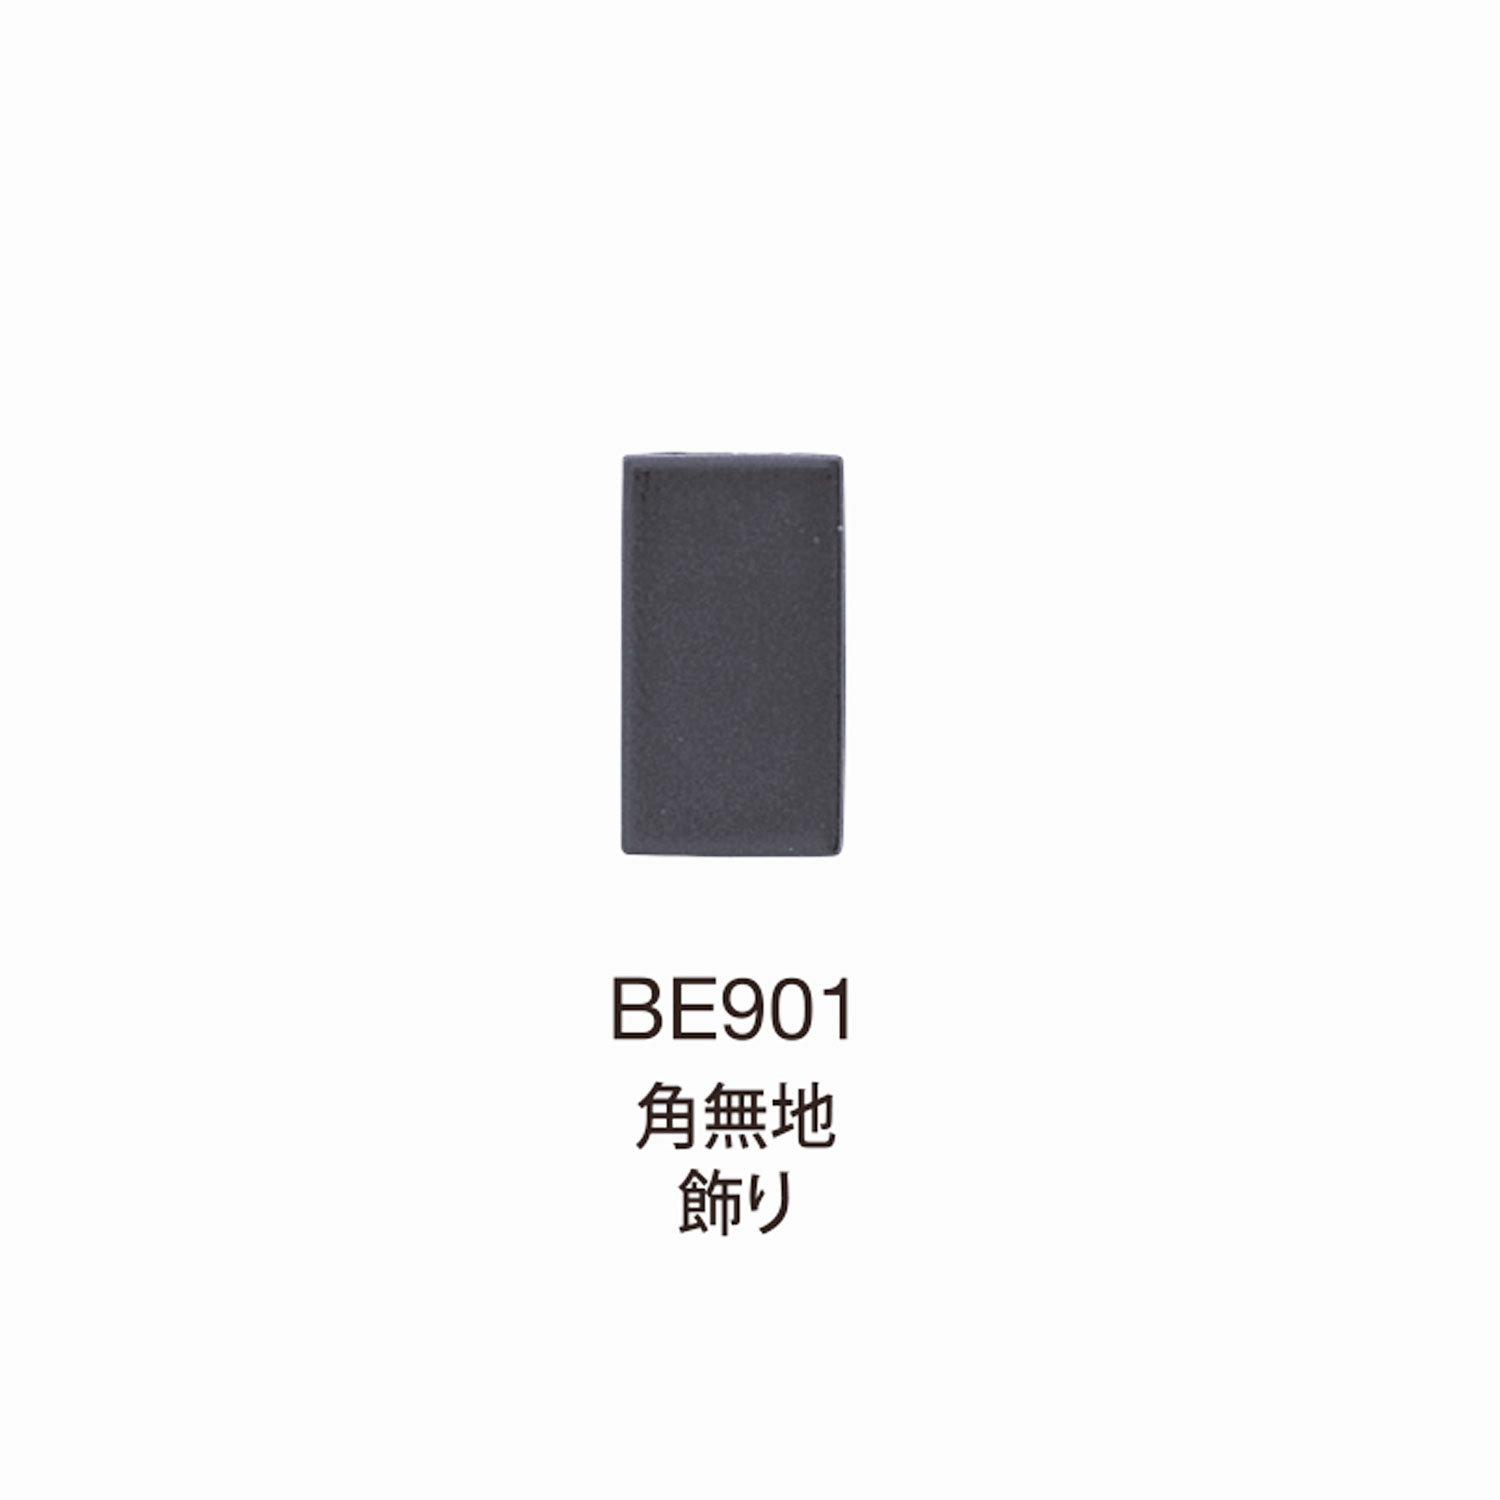 BE901 BEREX α Angolo Hardware Superiore Senza Motivo Decorativo[Fibbie E Anello] Morito